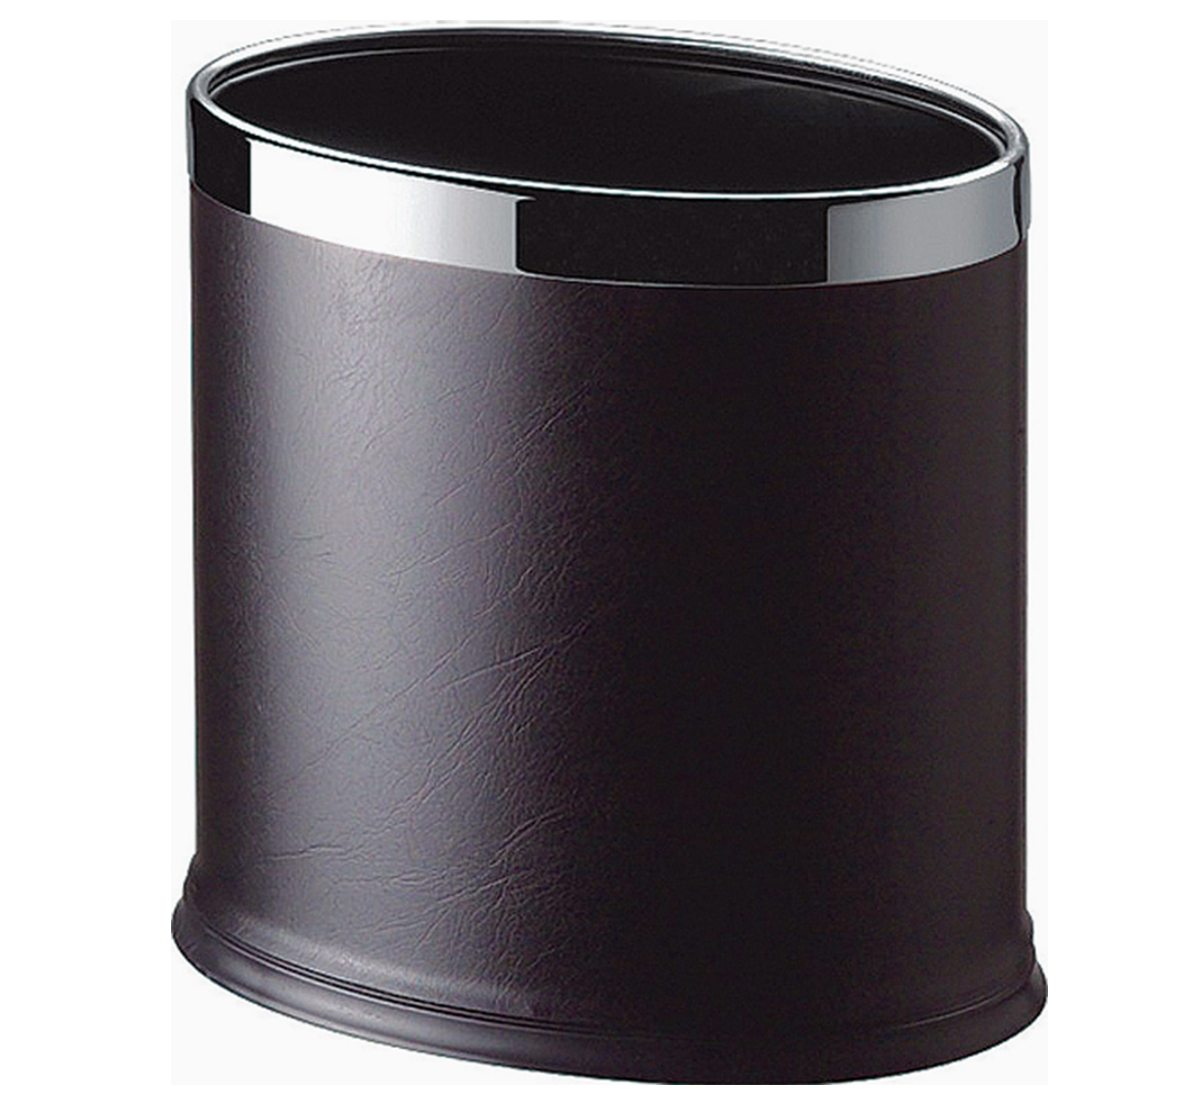 Black open oval room dustbin 8 litre 